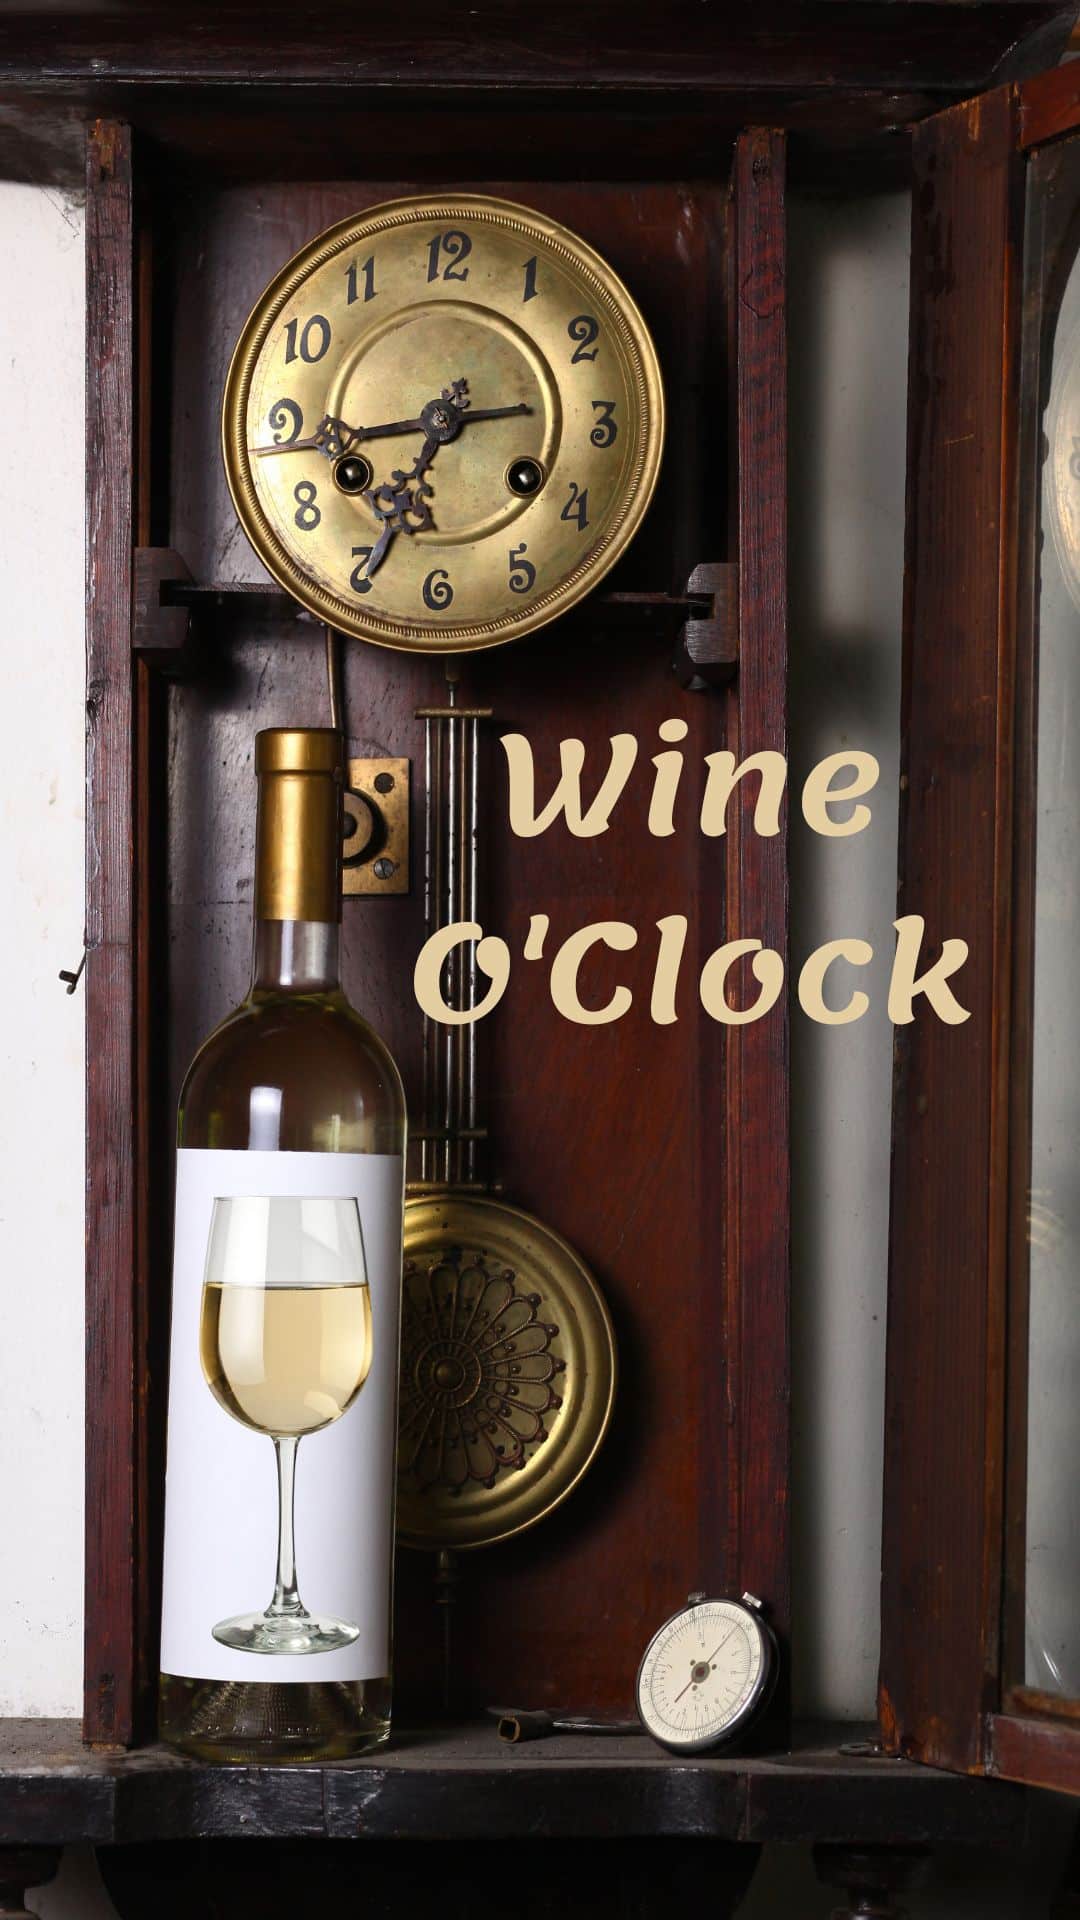 wine O'clock